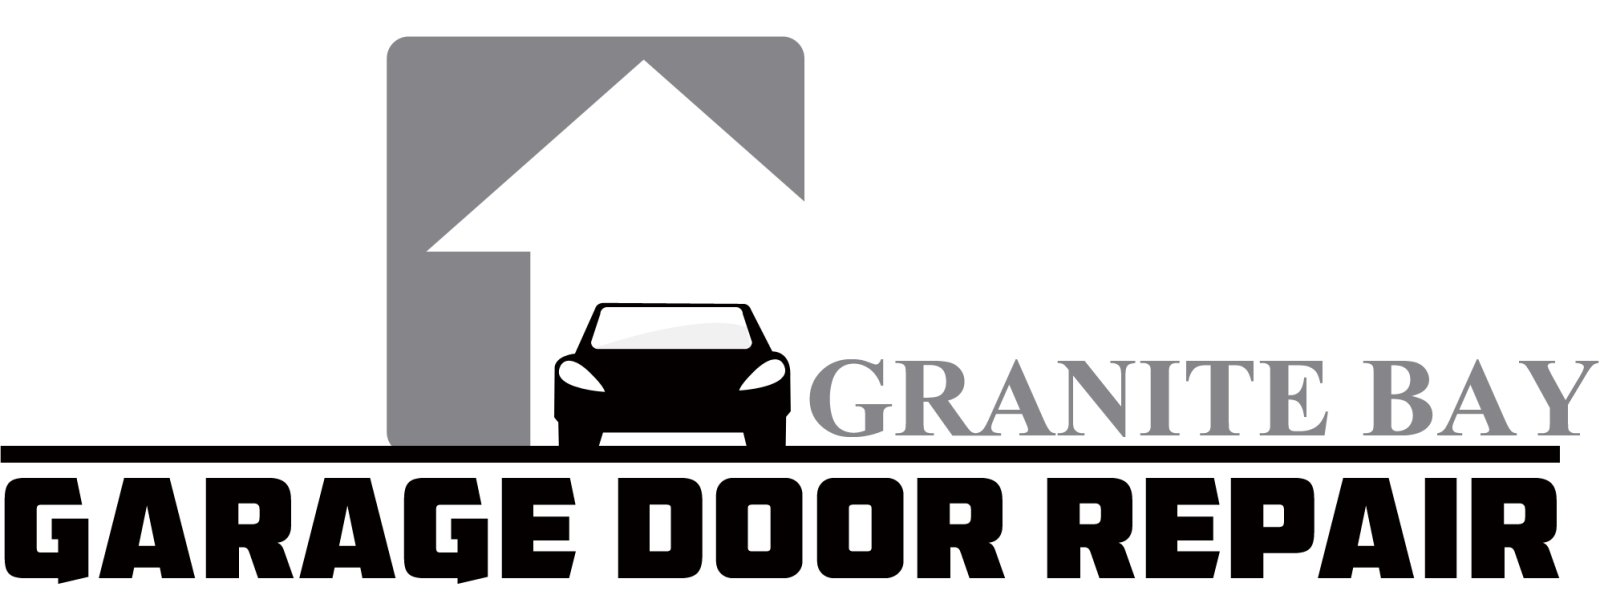 Garage Door Repair Granite Bay ,CA